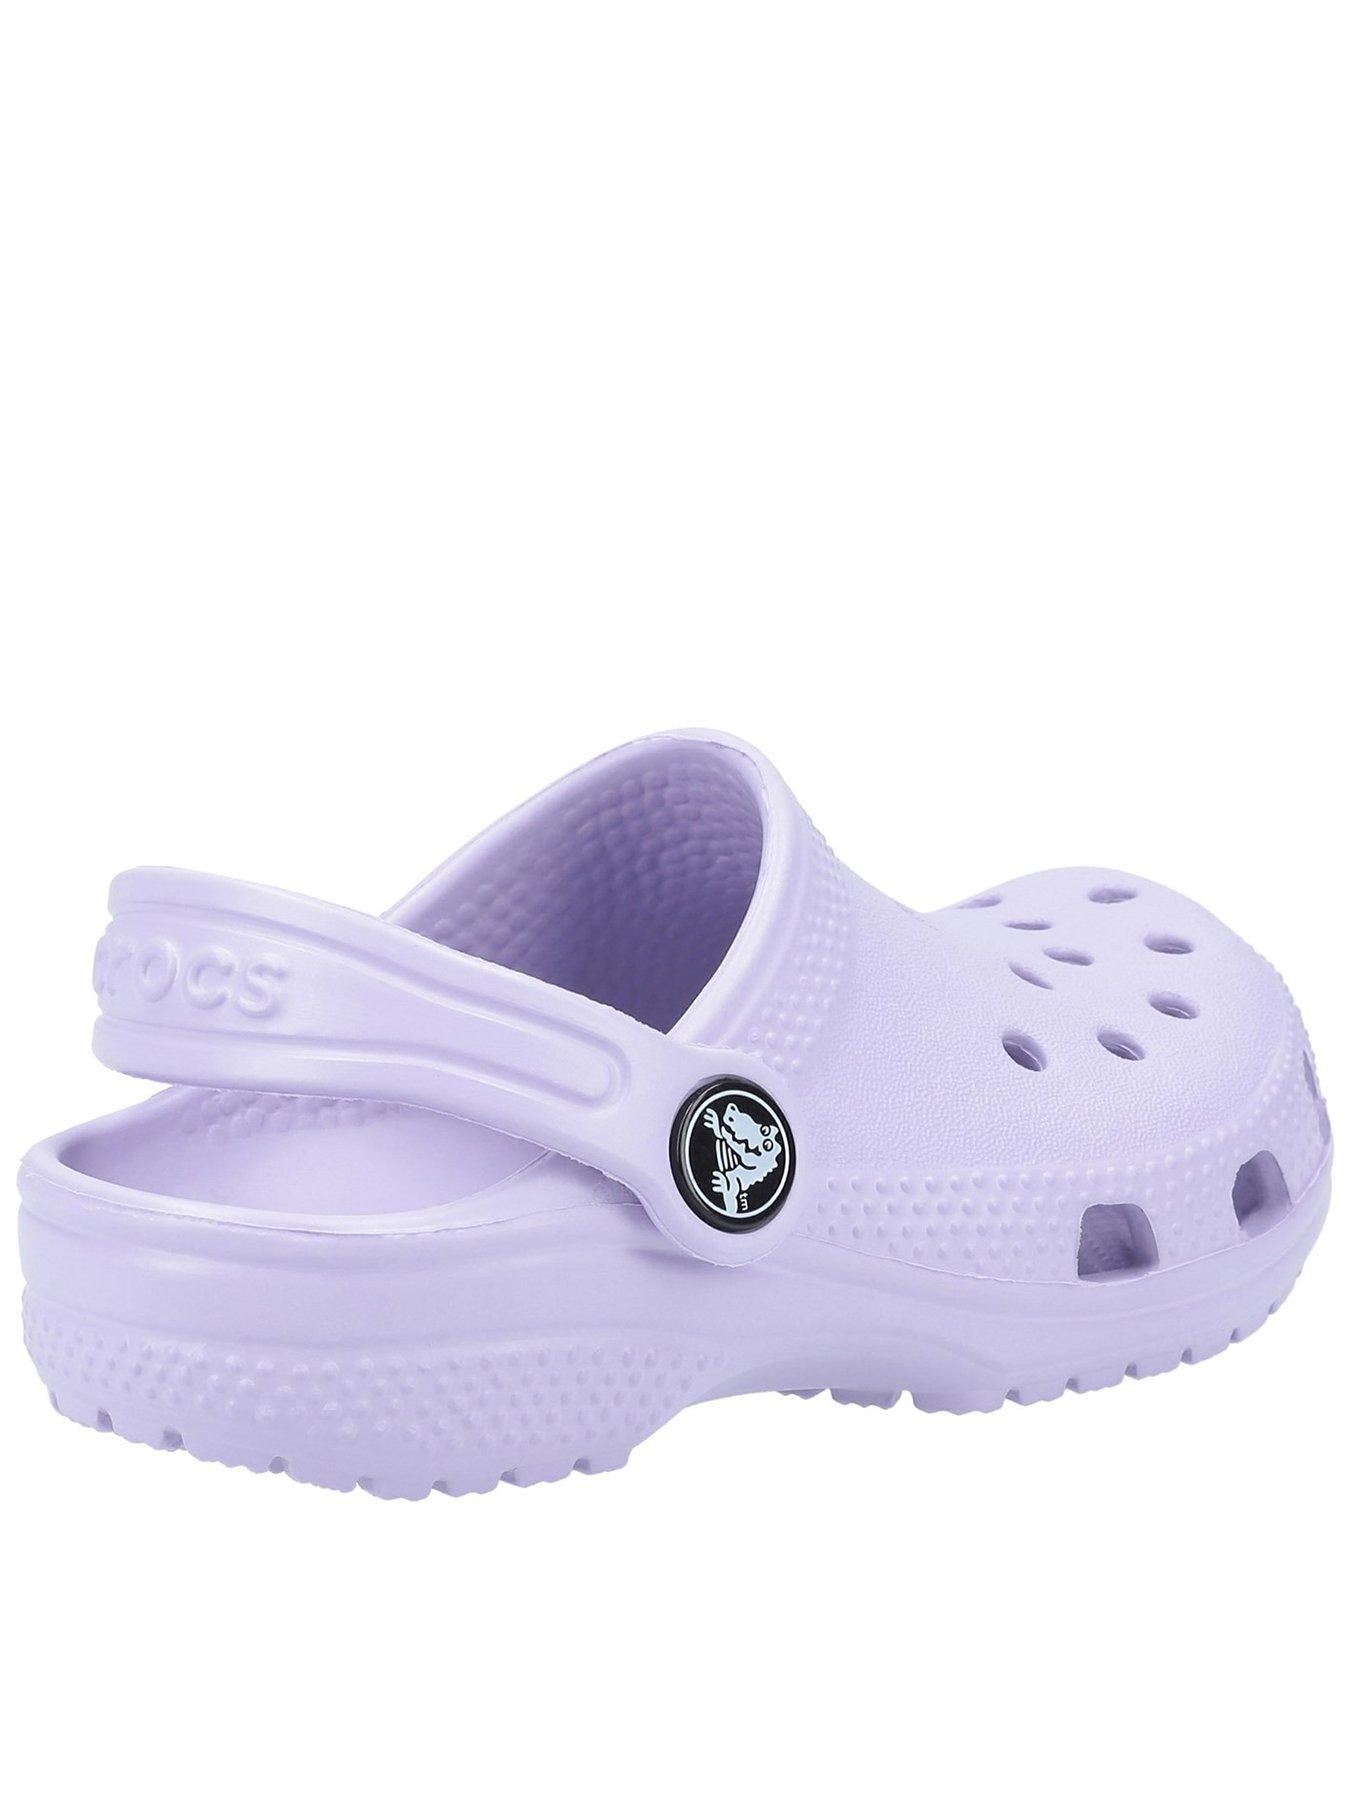 lilac crocs womens